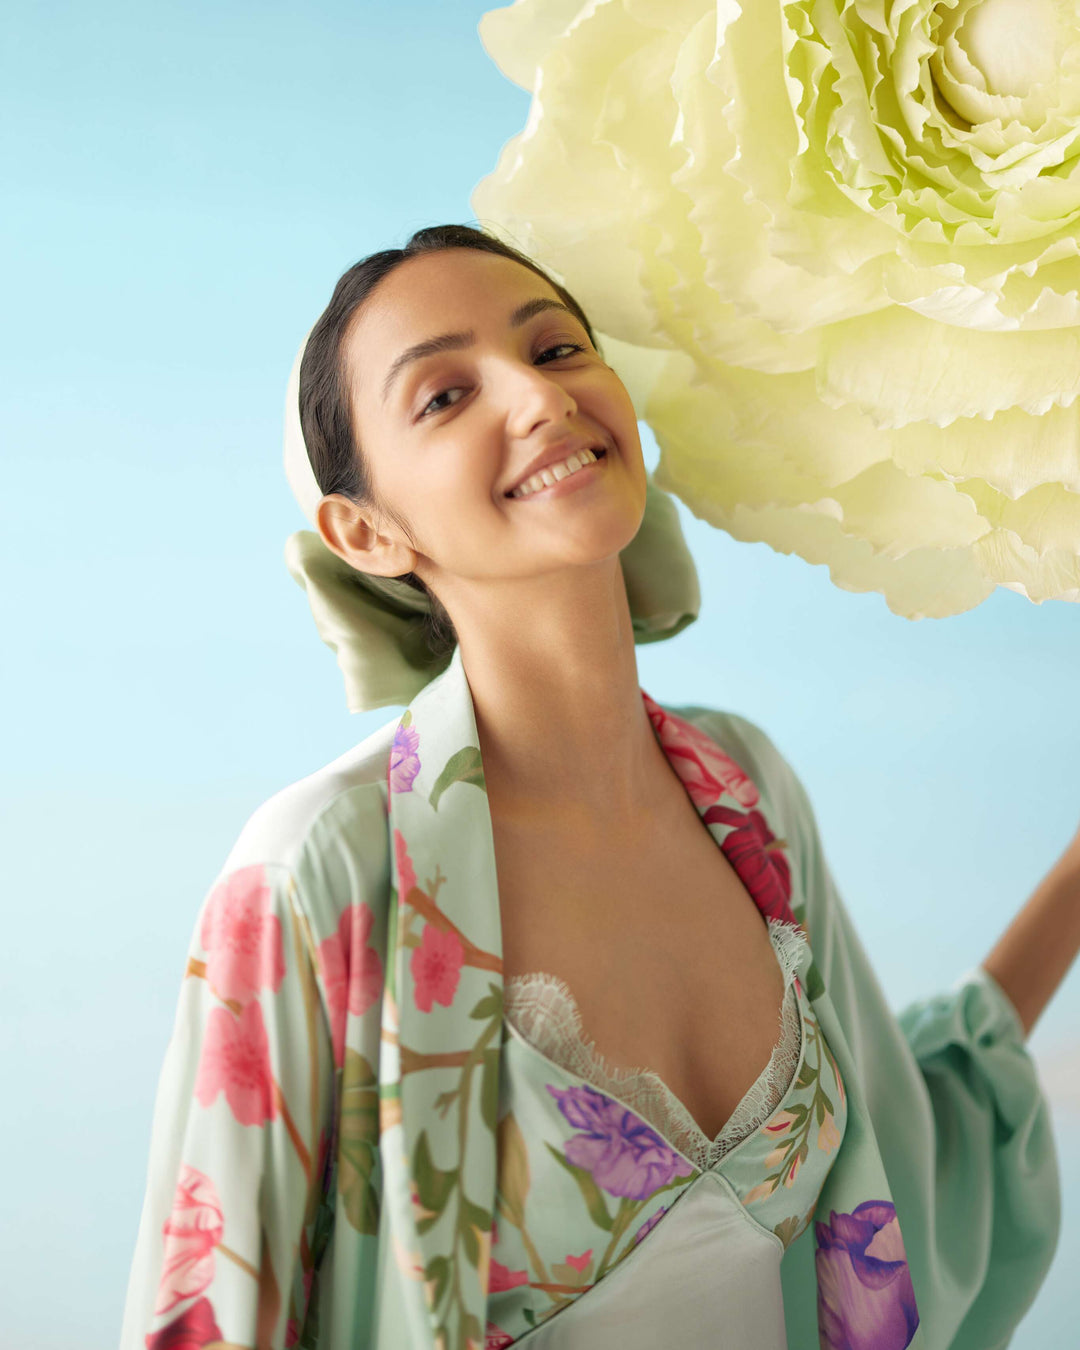 Celeste Floral Dream Silk Robe & Slip Set - Full Length